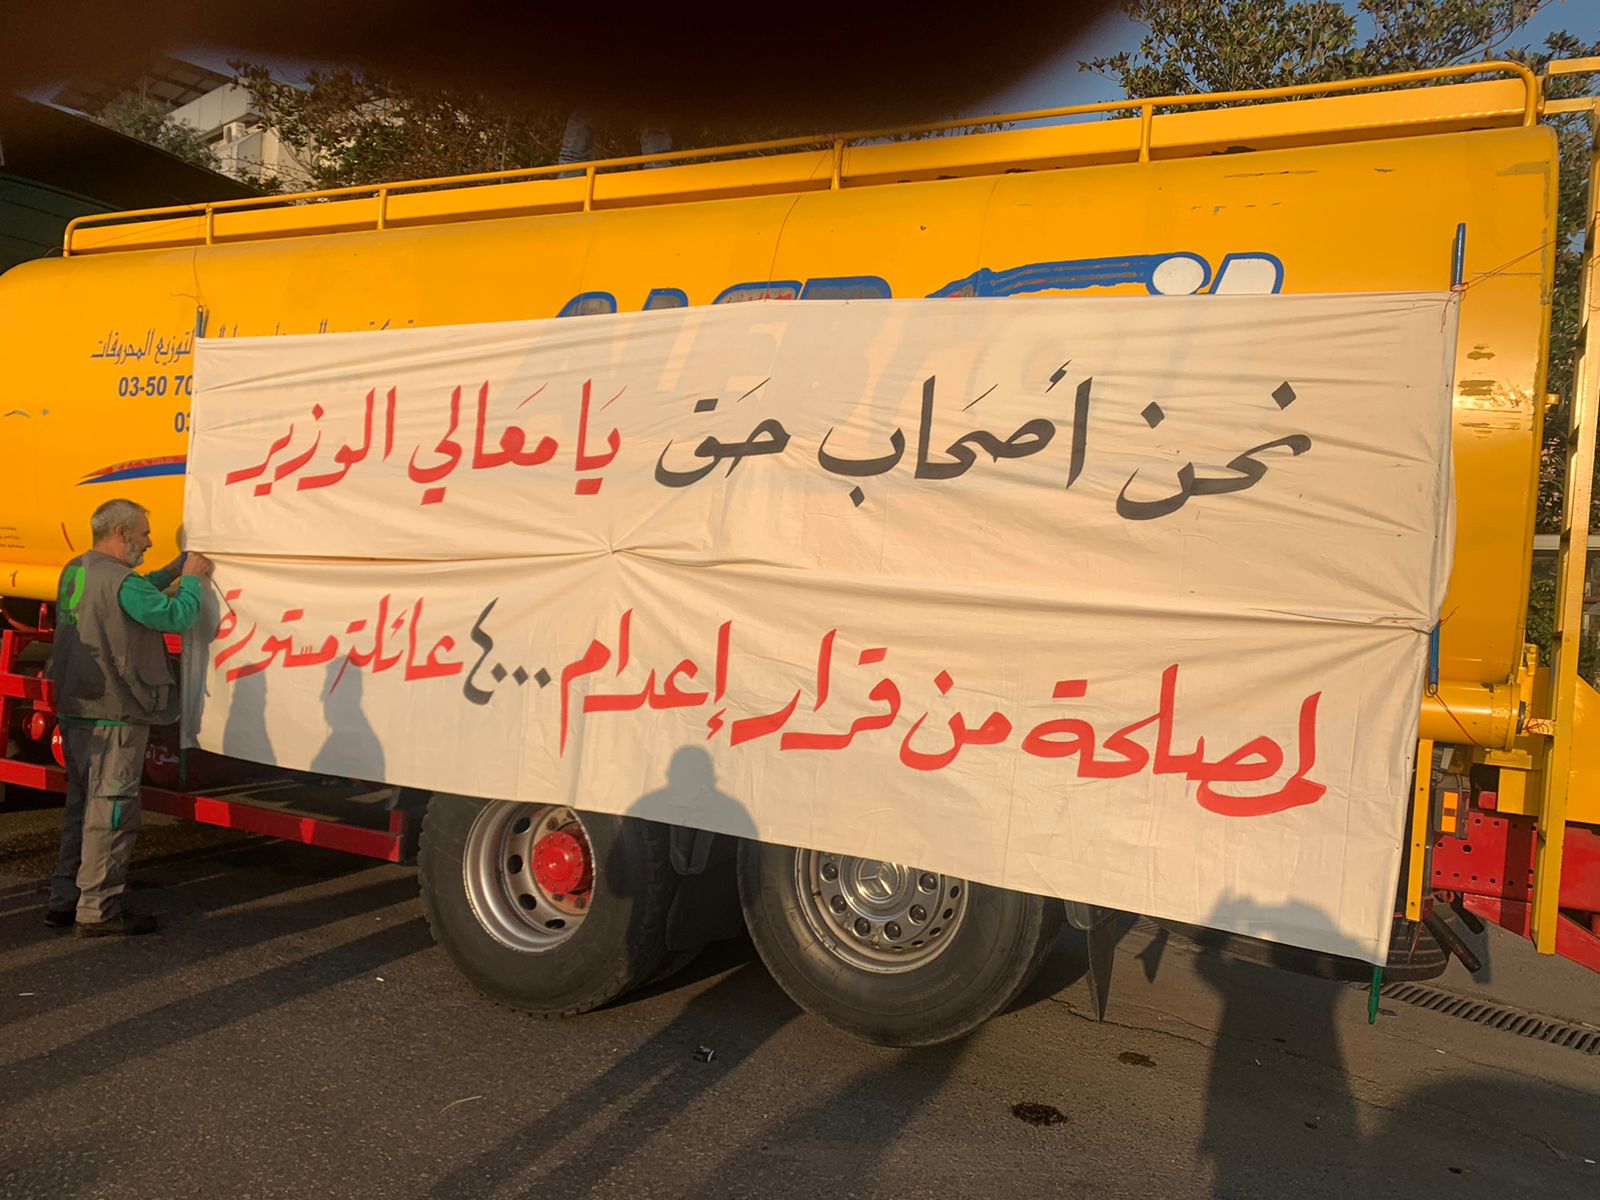 التحرك والإضراب  لإصحاب الصهاريج صباح هذا اليوم أمام وزارة الطاقة في بيروت